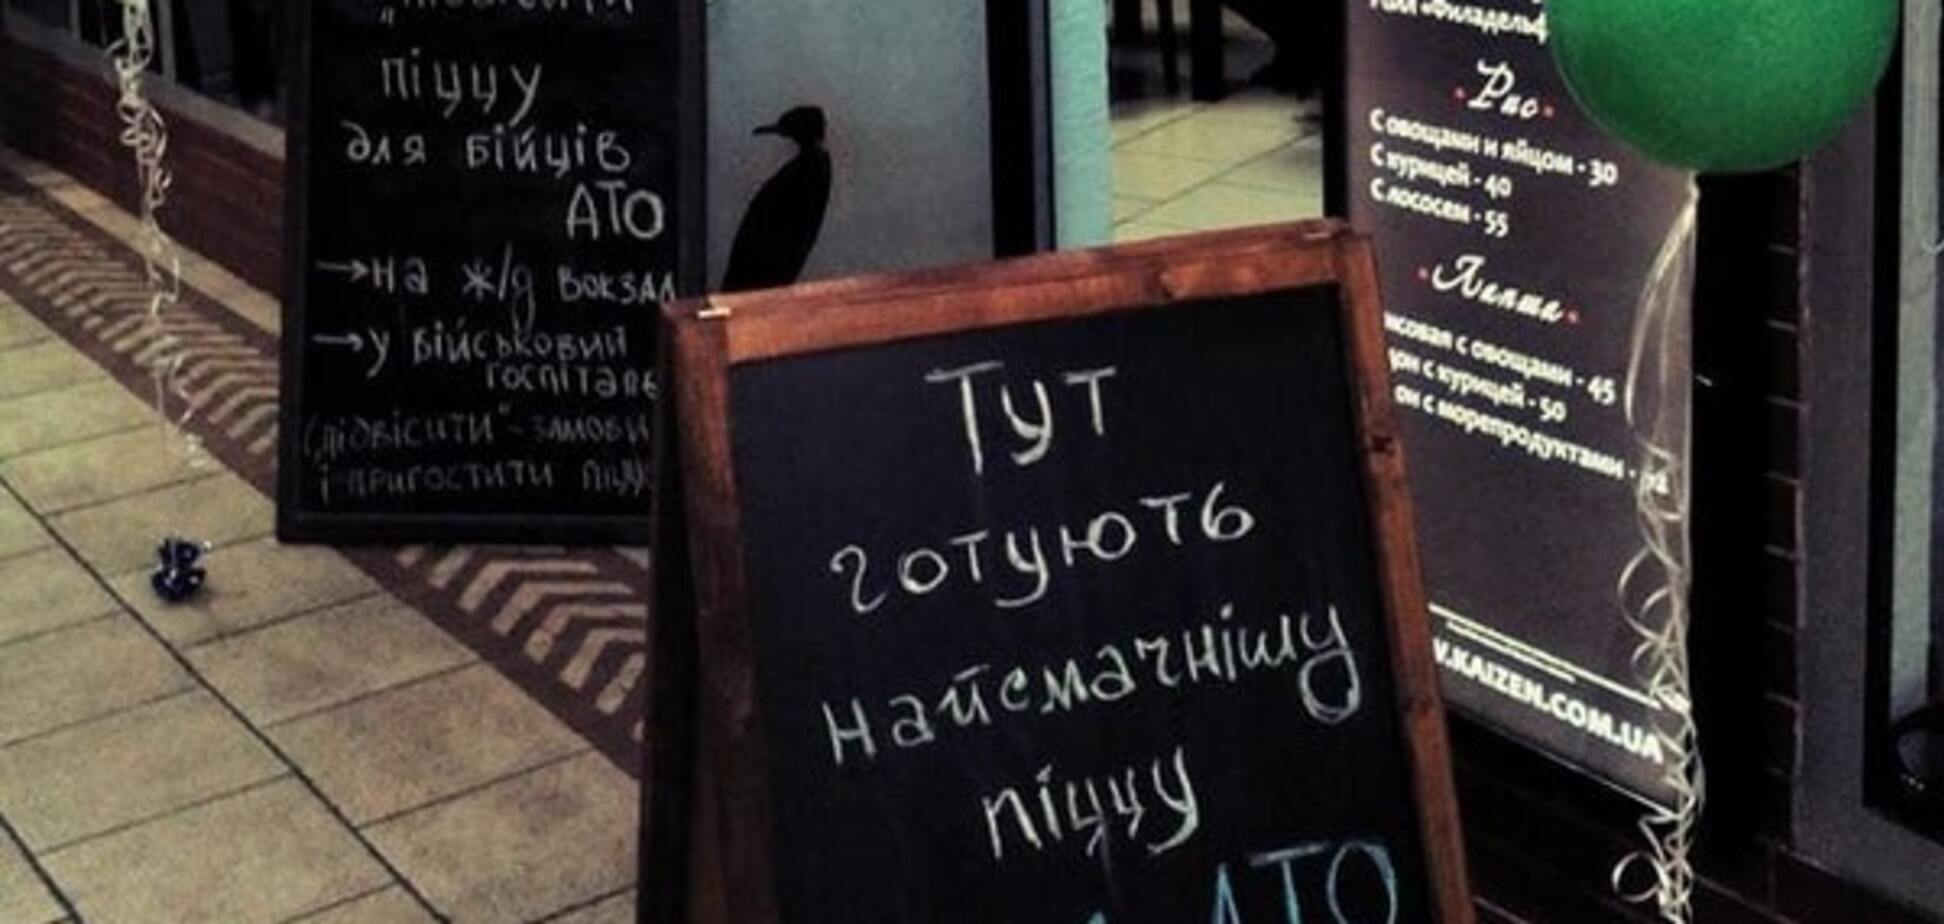 Бійці АТО відкрили в Києві особливу піцерію